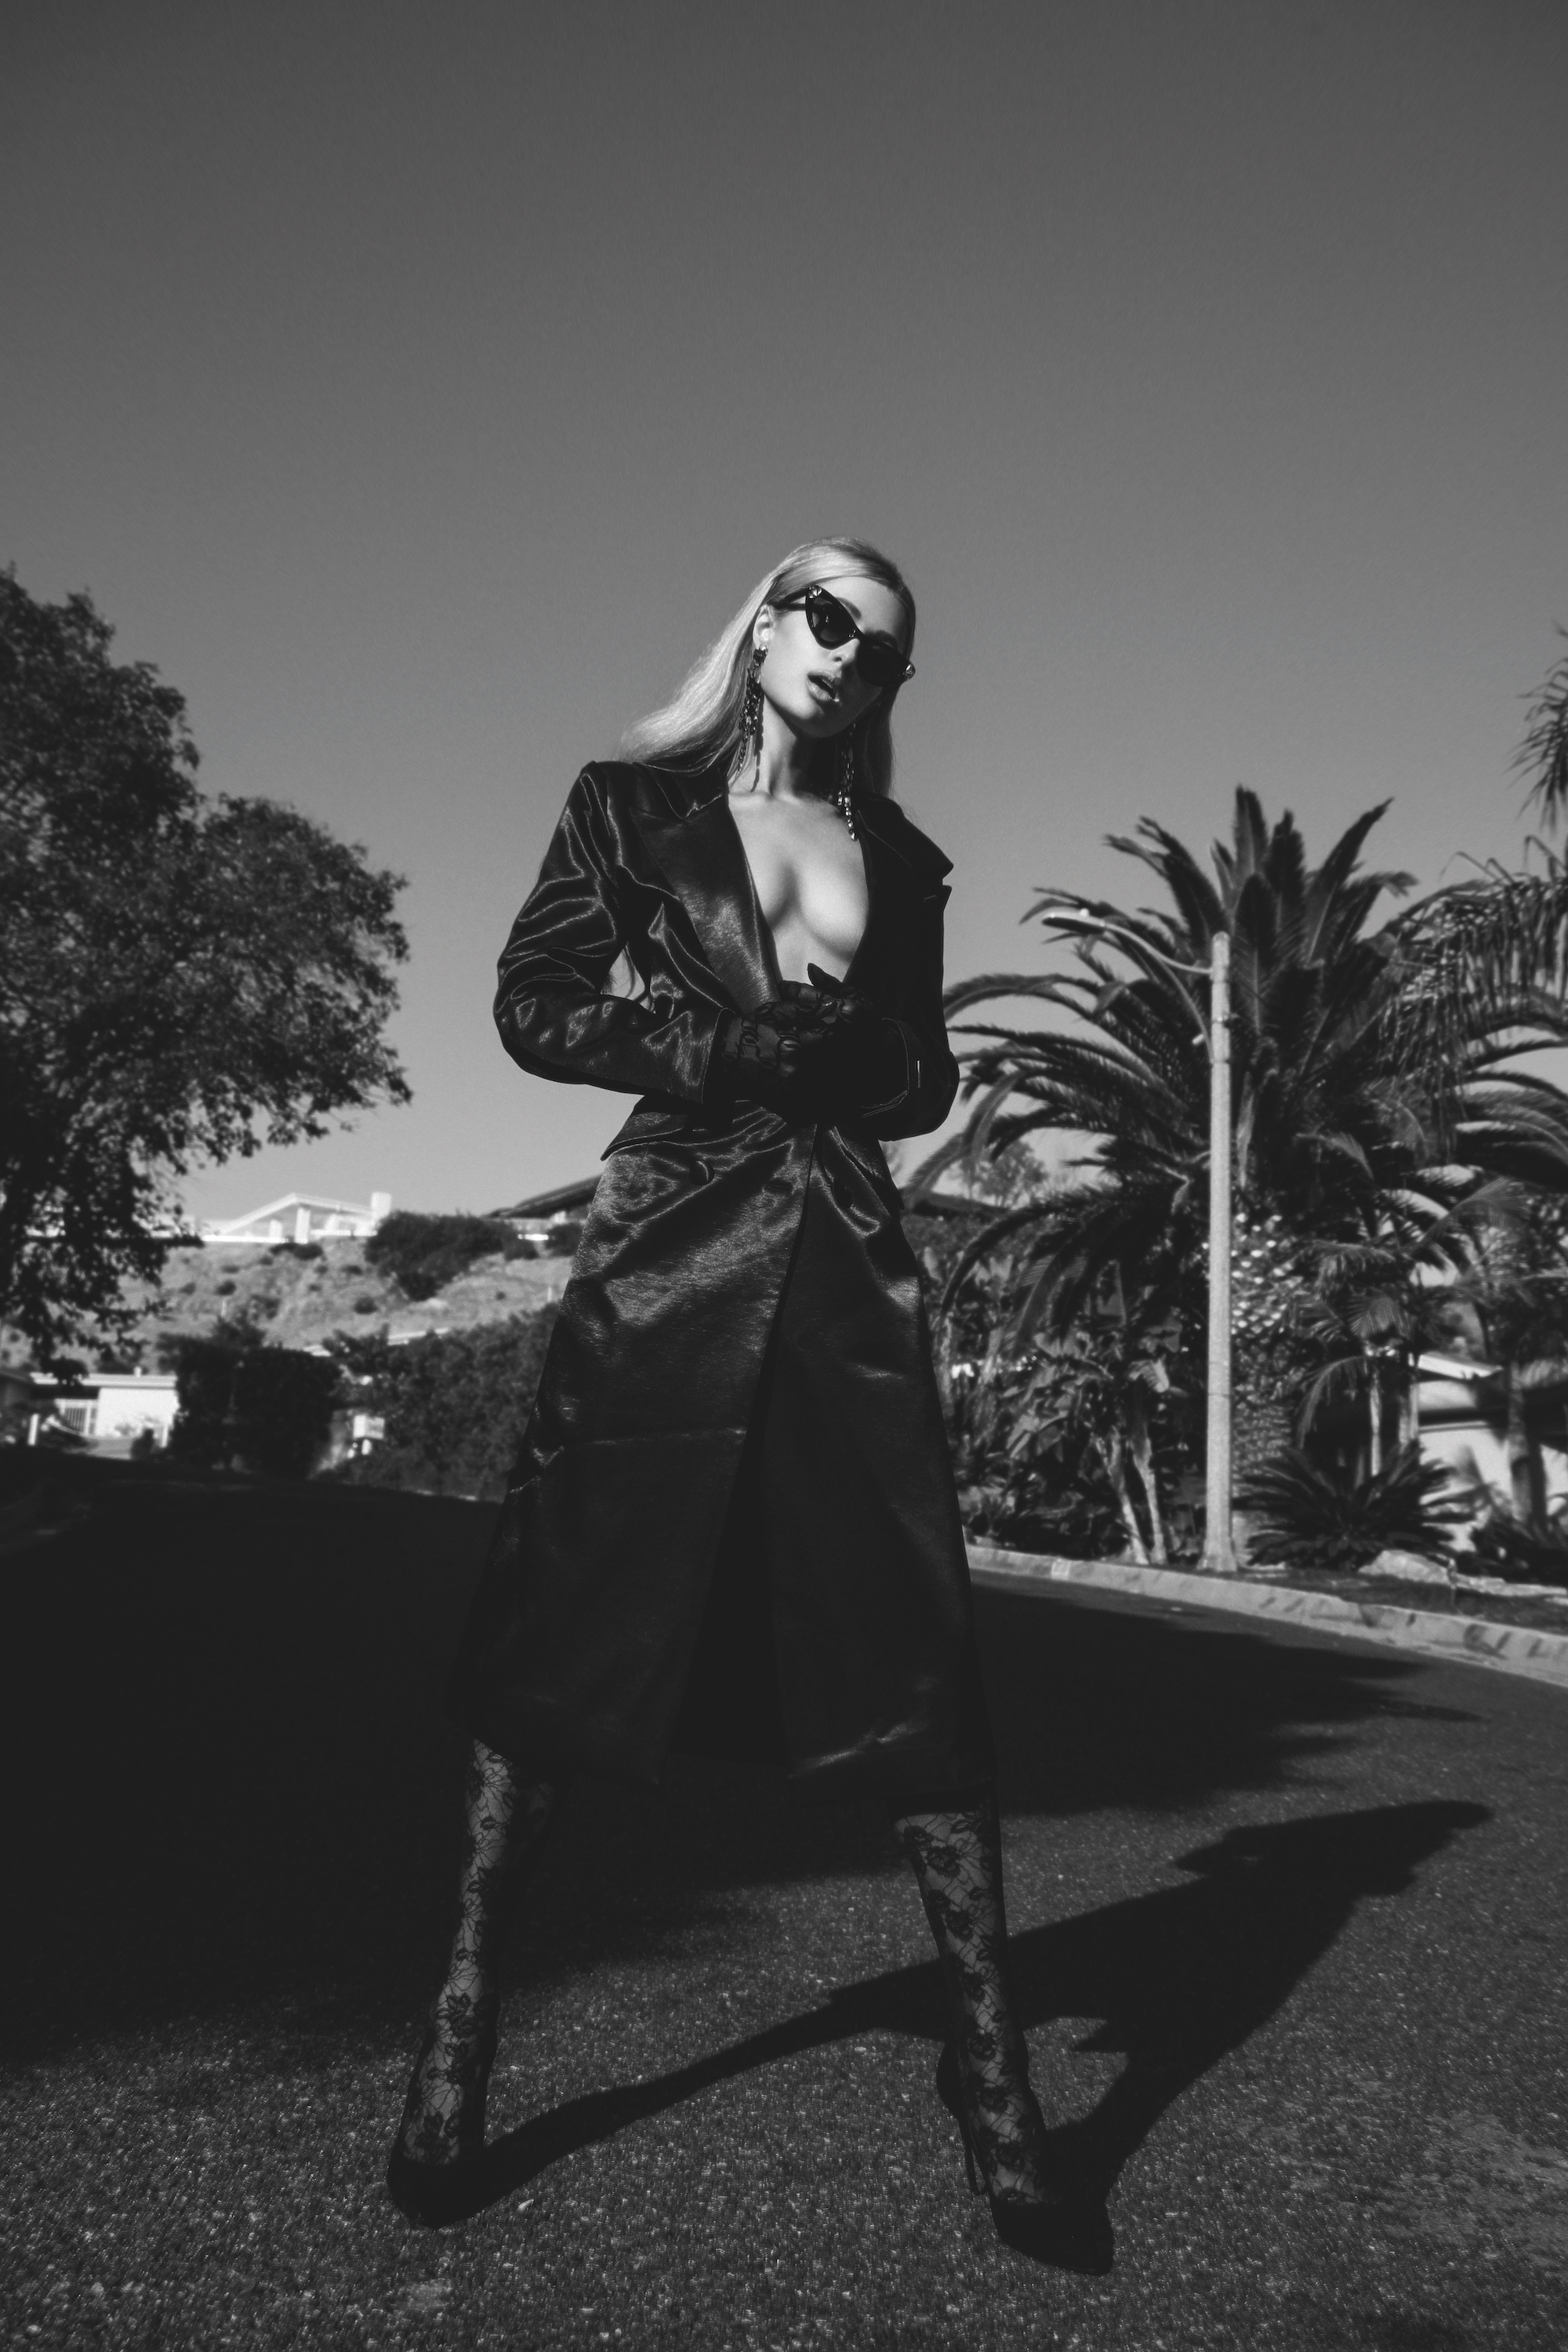 Paris Hilton suintant Sex Appeal dans New Shoot! - Photo 4